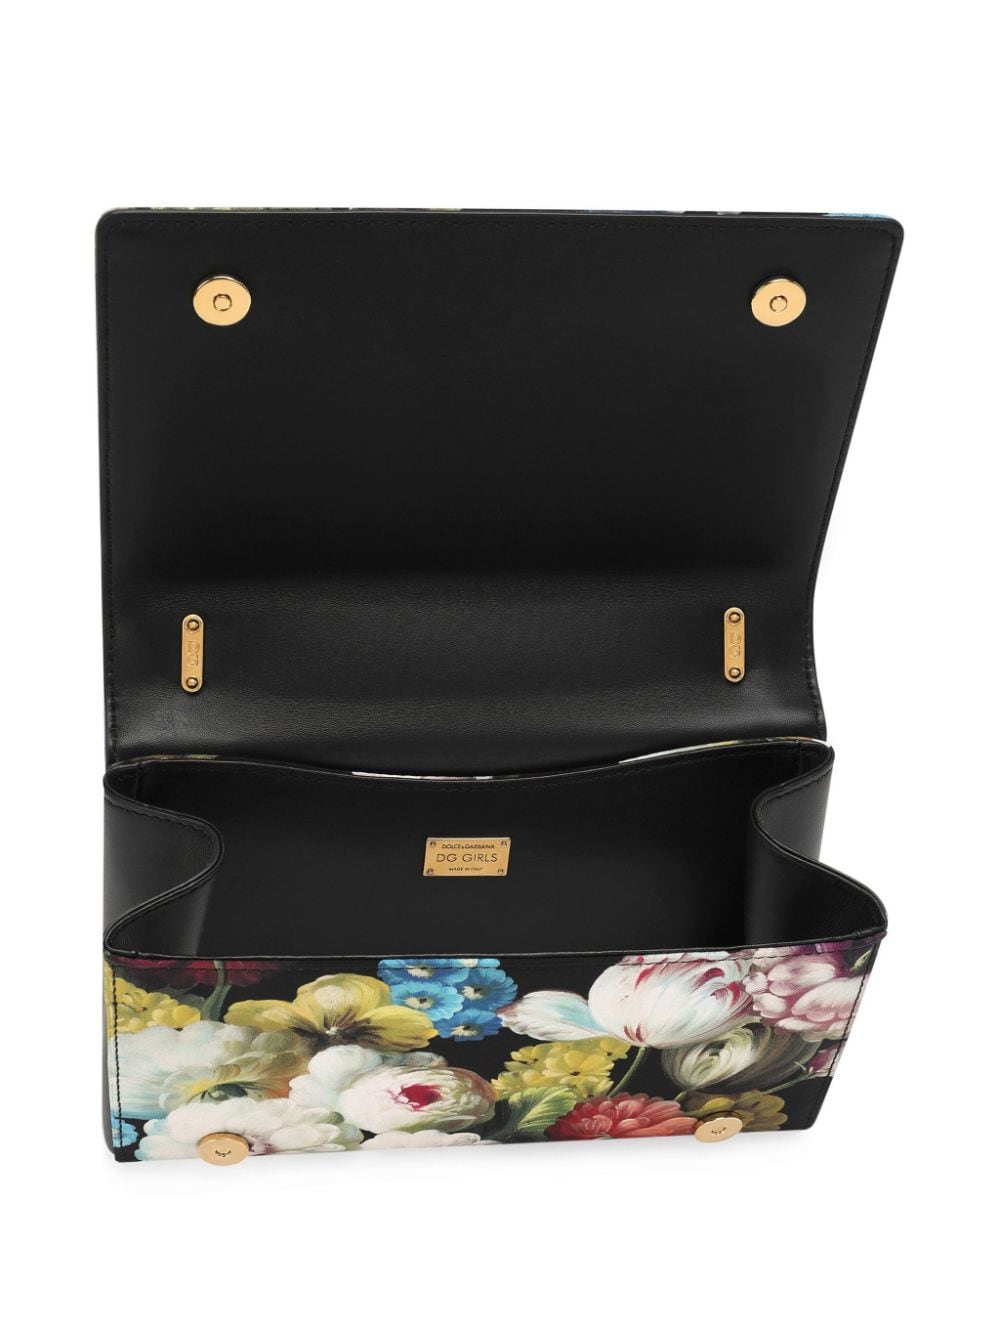 Dolce & Gabbana DG Girls schoudertas met bloemenprint Zwart